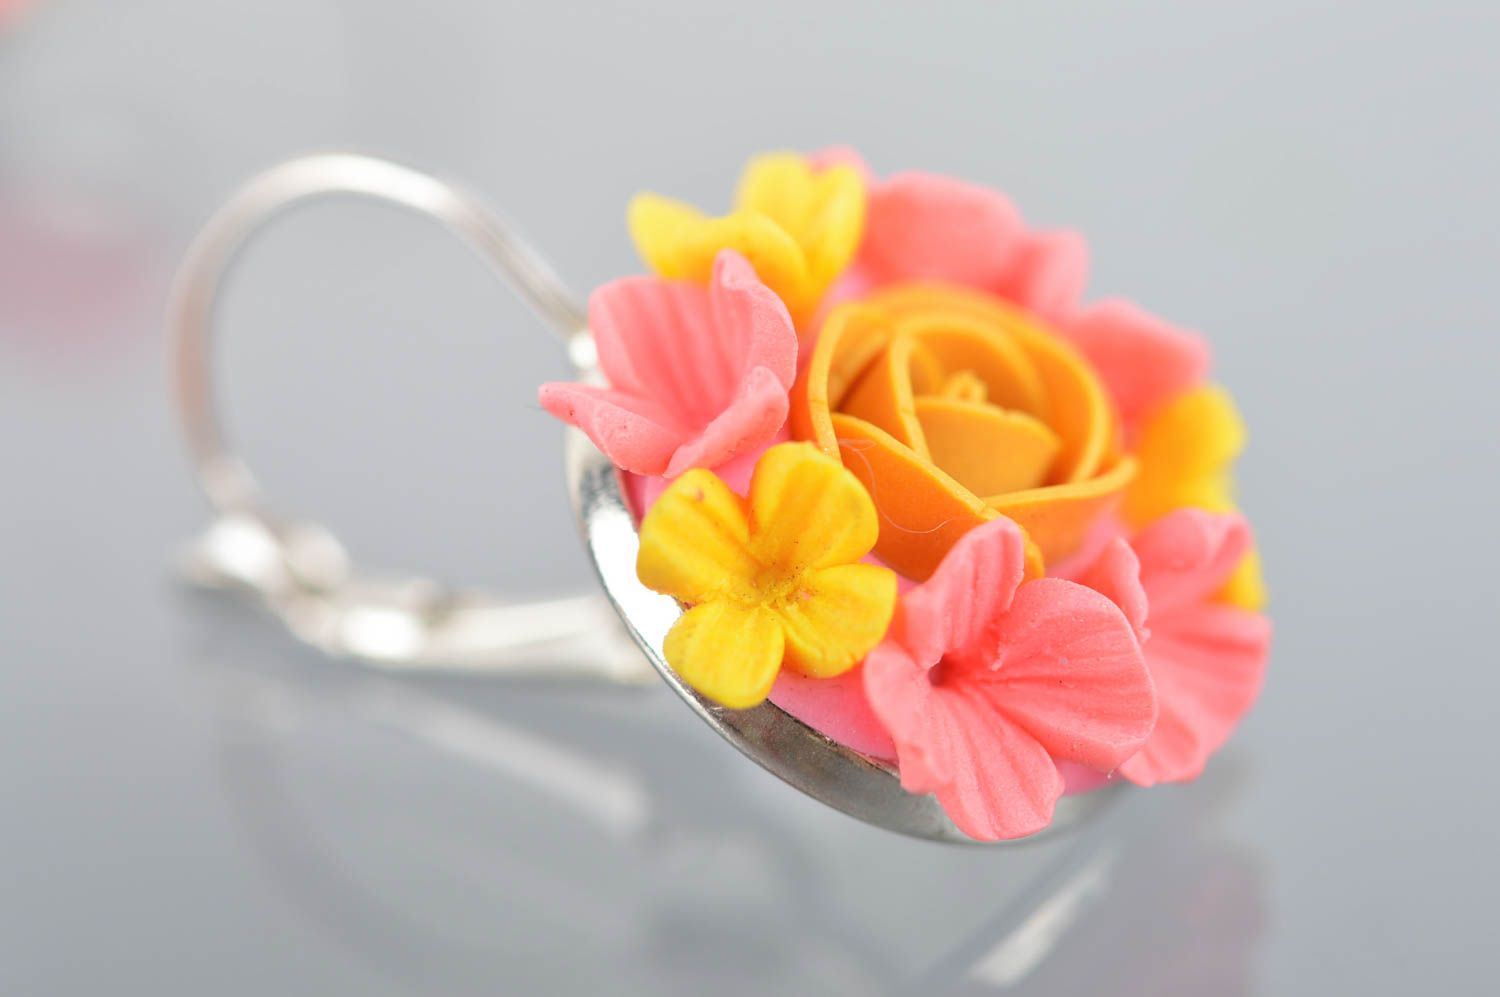 Серьги цветы из полимерной глины яркие розовые с желтым стильные ручной работы фото 4